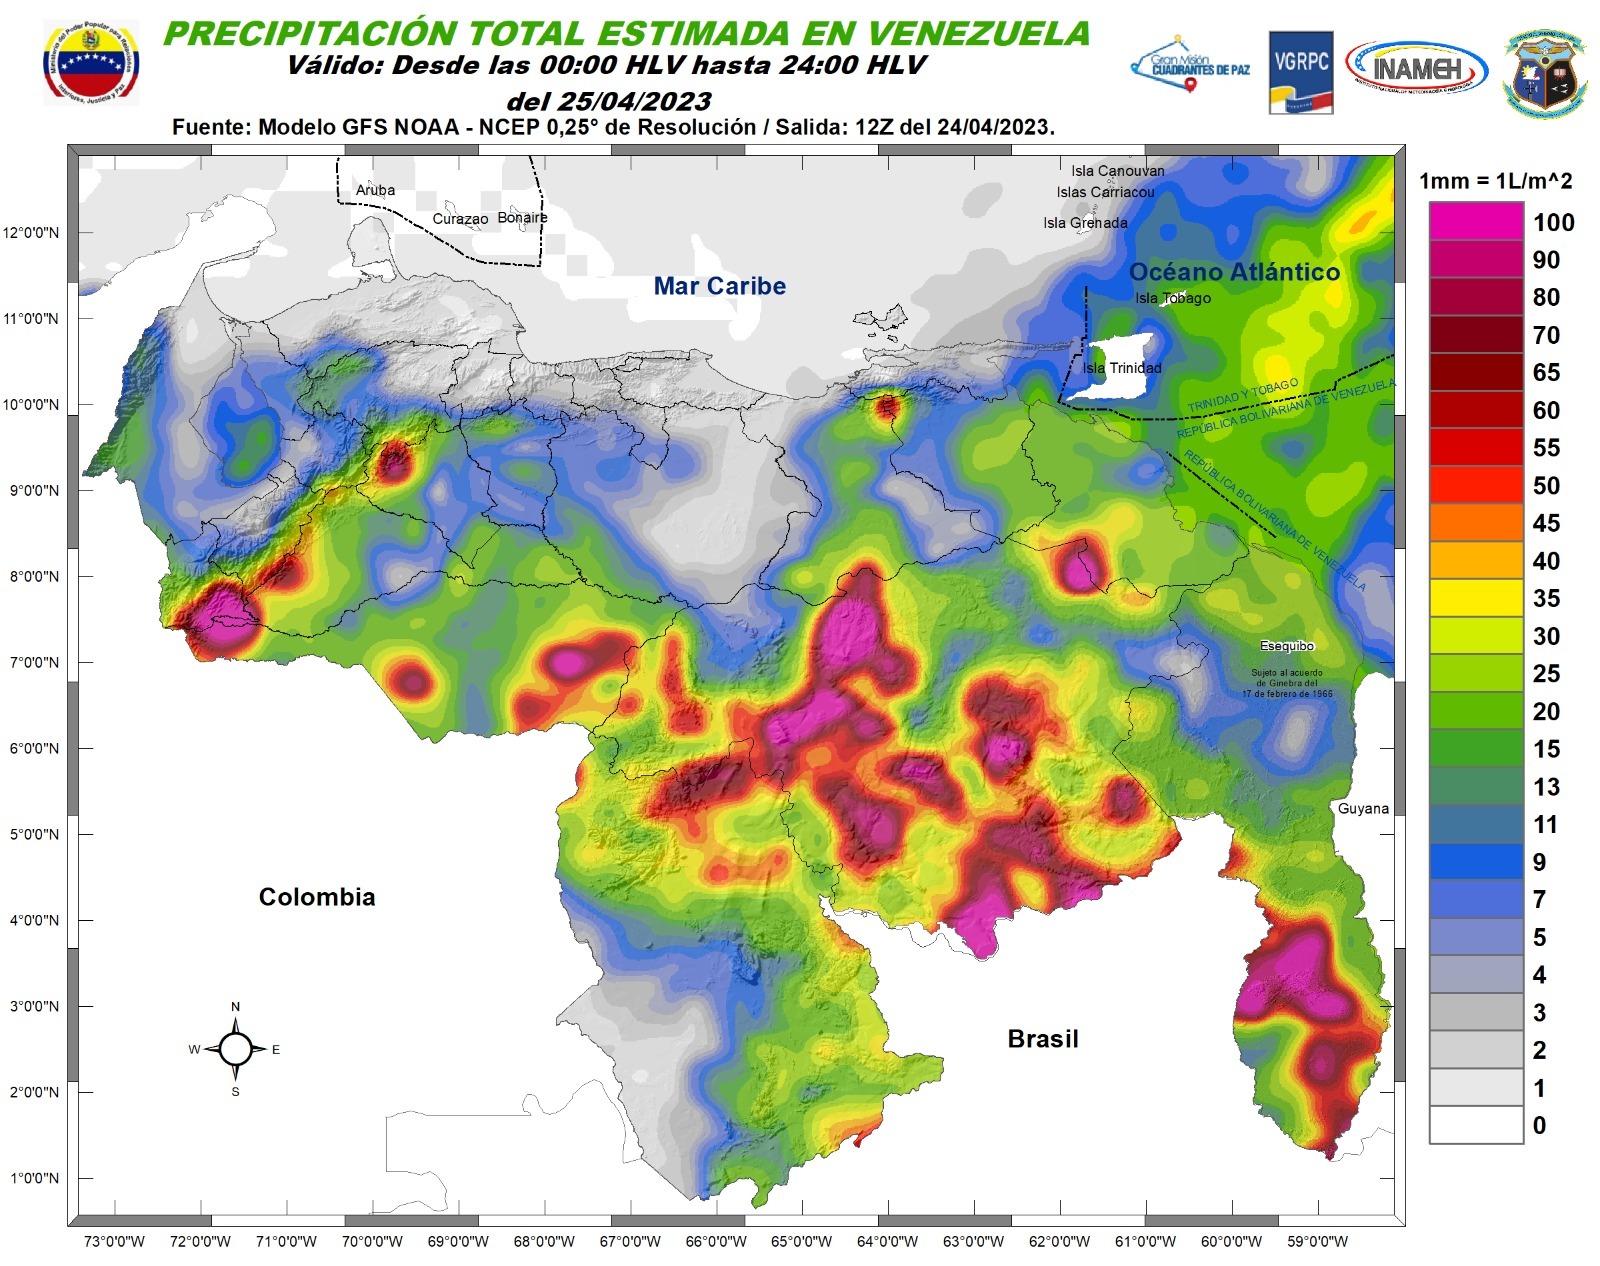 Inameh prevé nubosidad y lluvias en varios estados de Venezuela este #25Abr